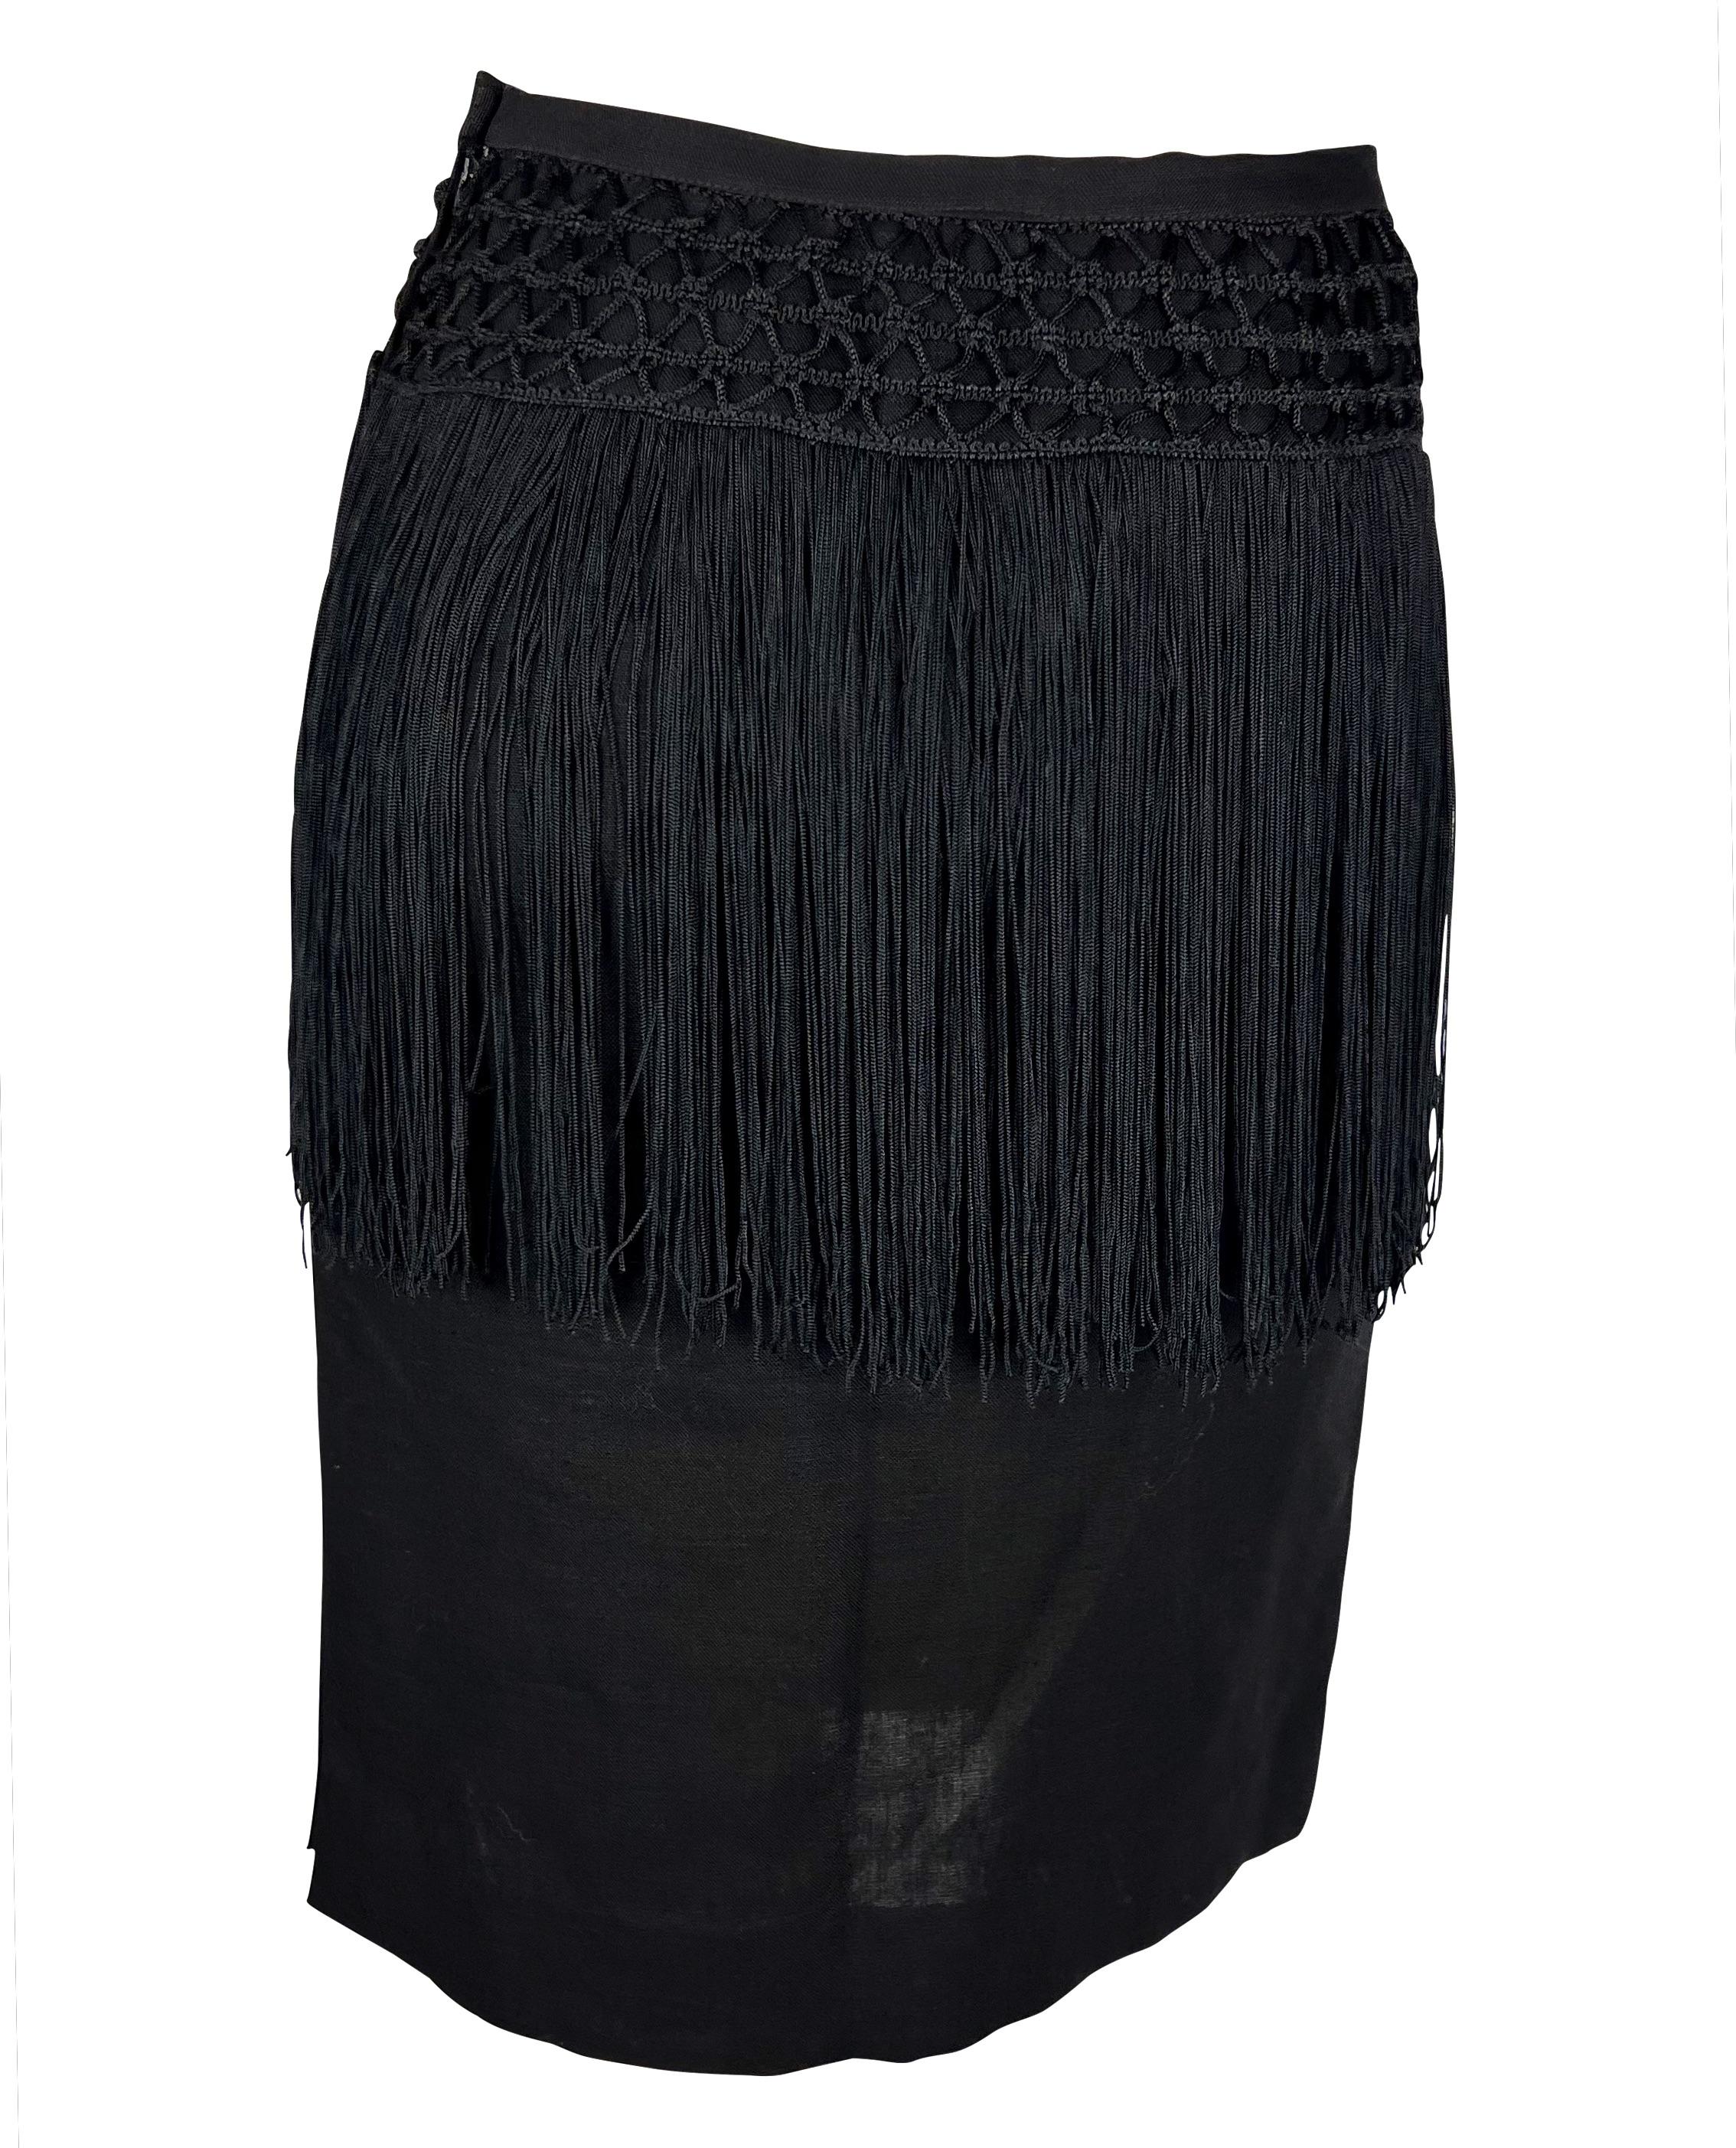 Women's Early 1990s Valentino Garavani Fringe Knit Black Linen Pencil Skirt For Sale